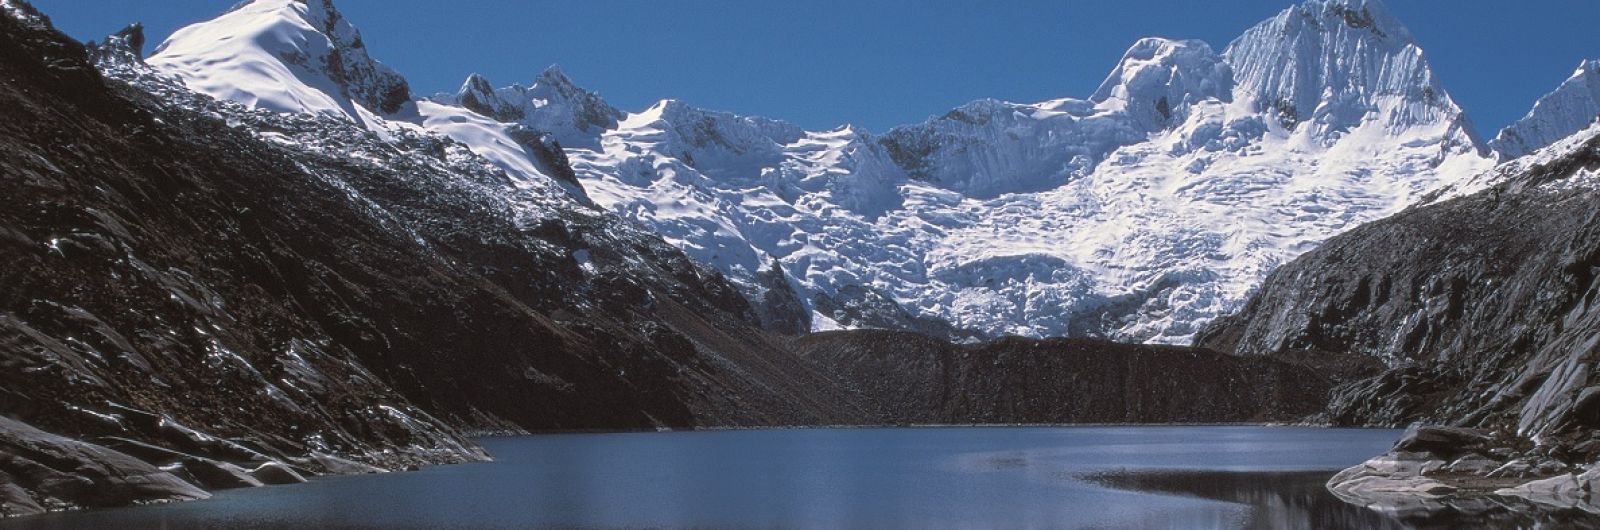 Perú. Trekking Cordillera Blanca y Huayhuash